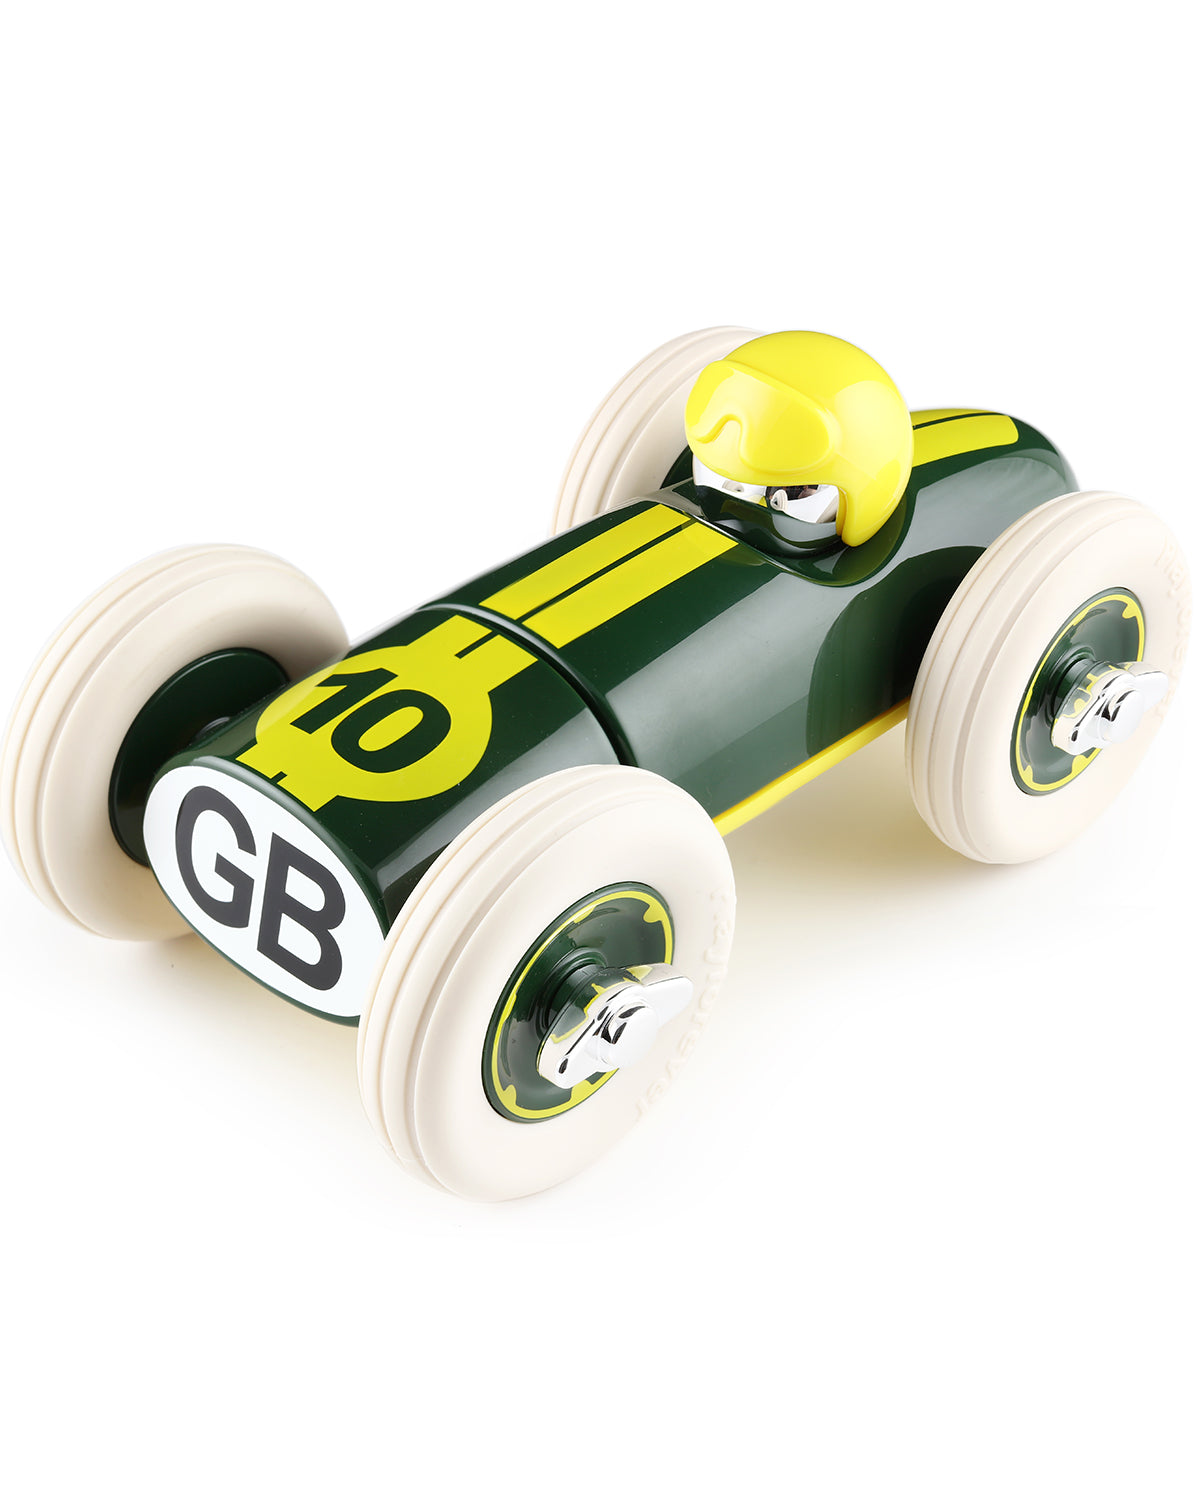 Playforever Toy Car MIDI BONNIE GB